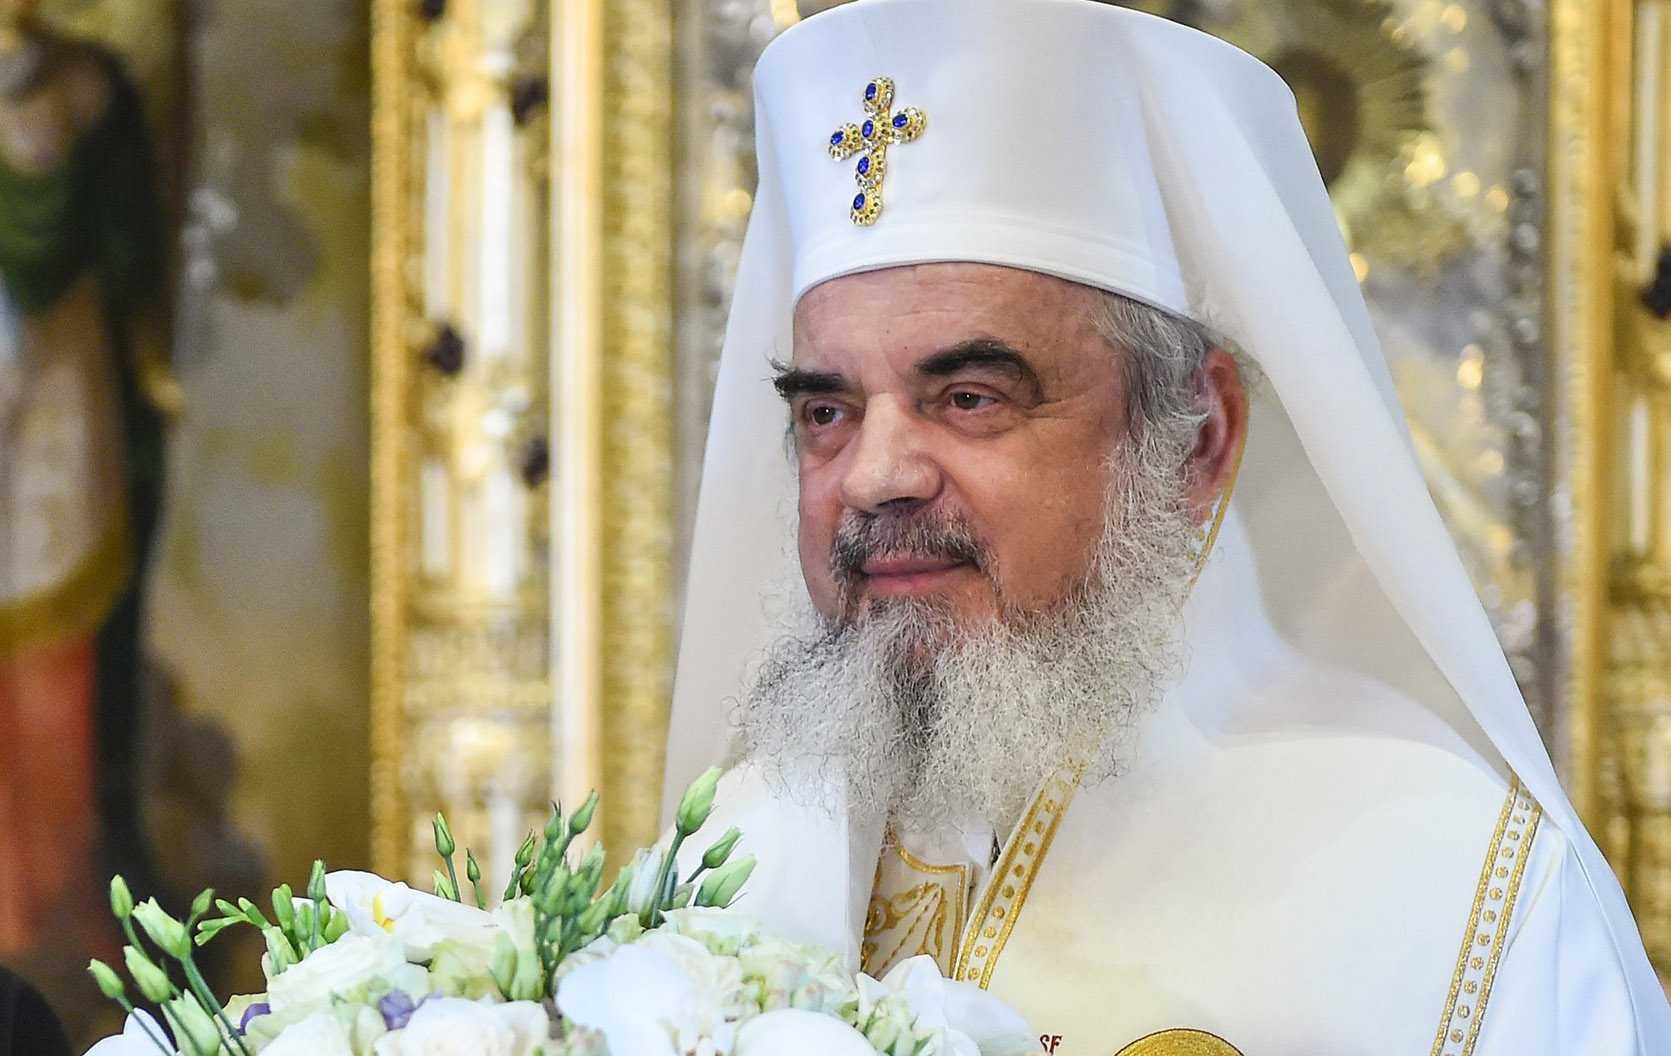  Patriarhul Daniel: Să răspundem lui Dumnezeu prin rugăciune şi oamenilor încercaţi cu fapte bune